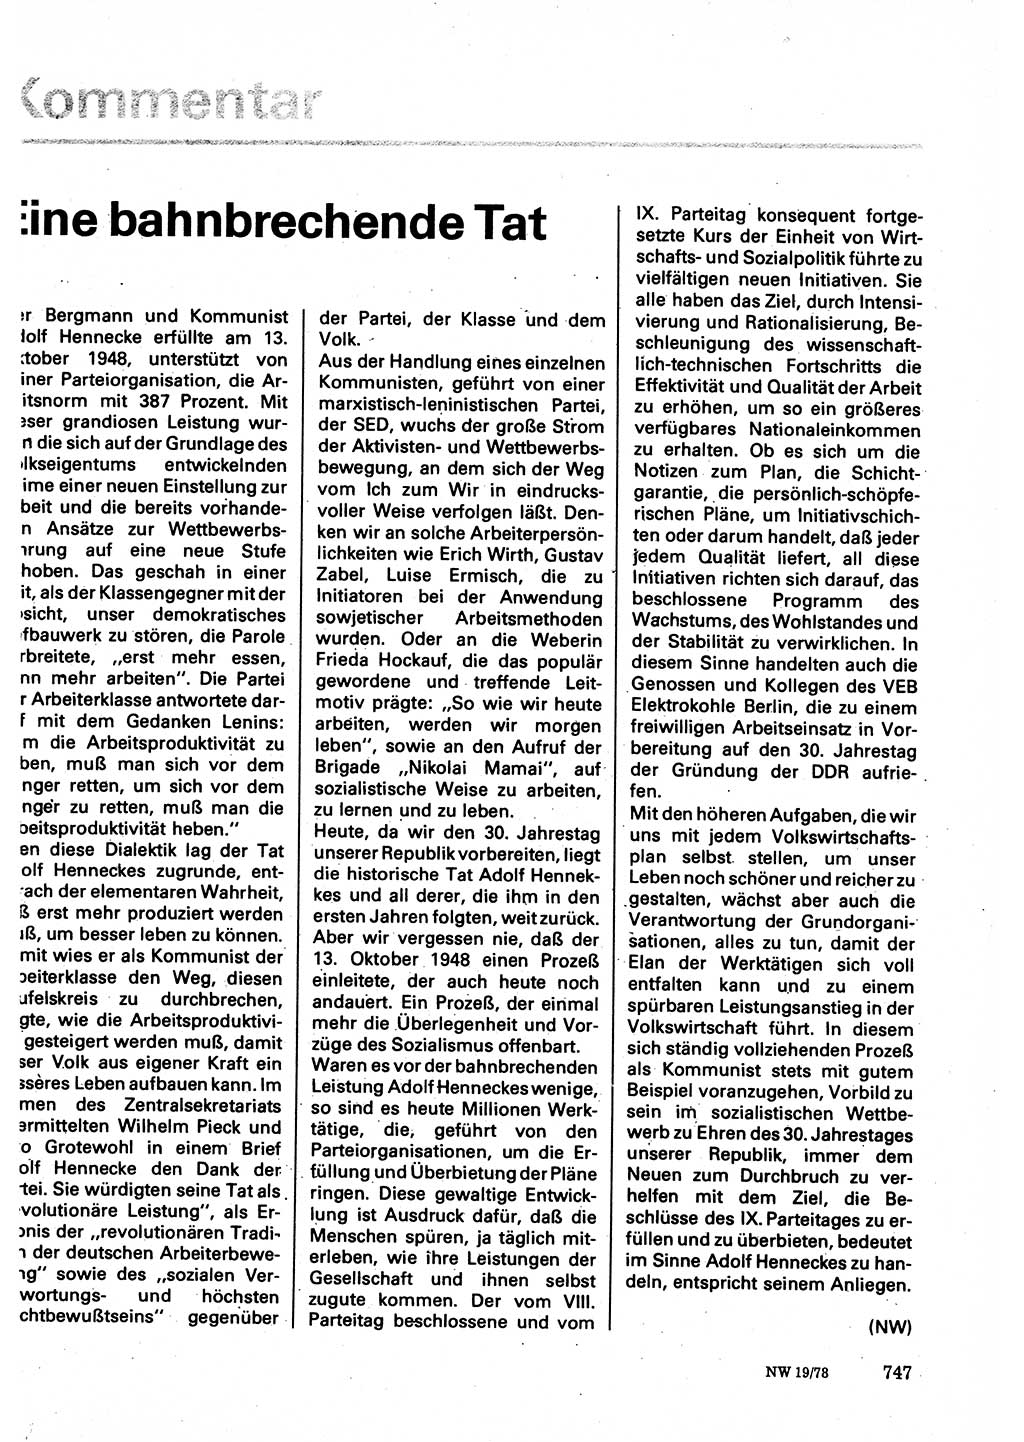 Neuer Weg (NW), Organ des Zentralkomitees (ZK) der SED (Sozialistische Einheitspartei Deutschlands) für Fragen des Parteilebens, 33. Jahrgang [Deutsche Demokratische Republik (DDR)] 1978, Seite 747 (NW ZK SED DDR 1978, S. 747)